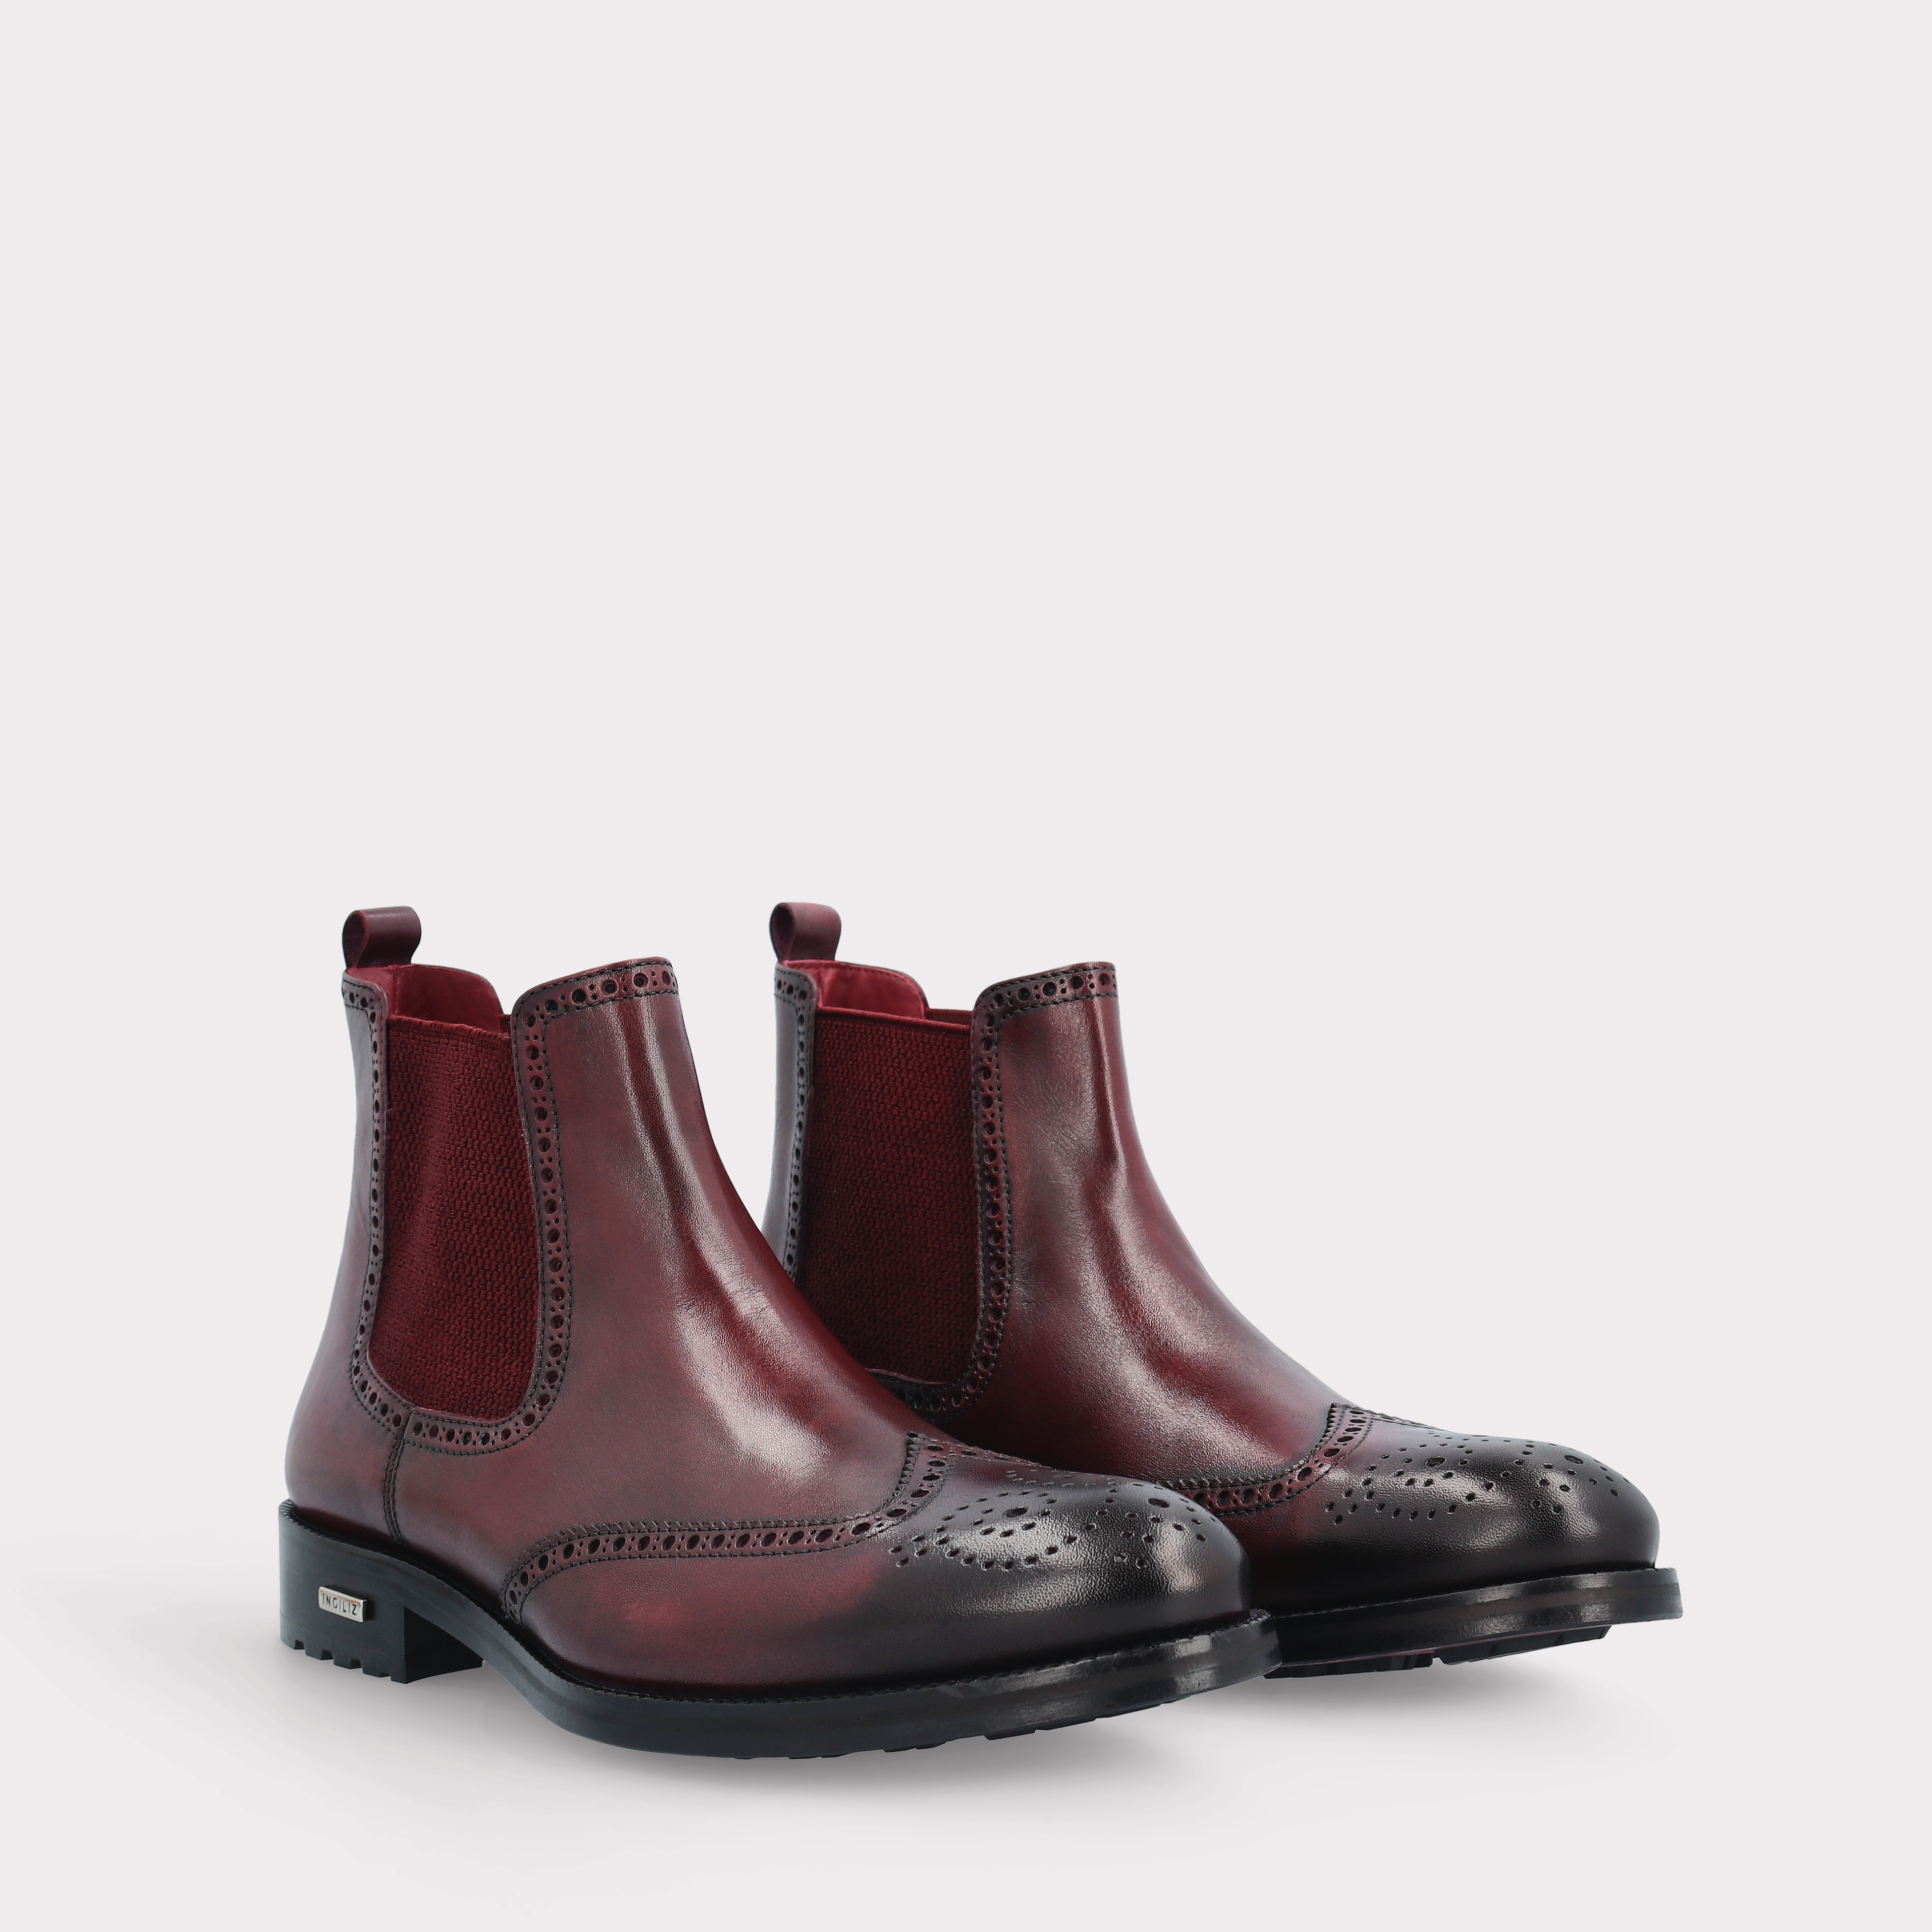 MODENA 01 bordeaux leather chelsea boots with bordeaux elastic